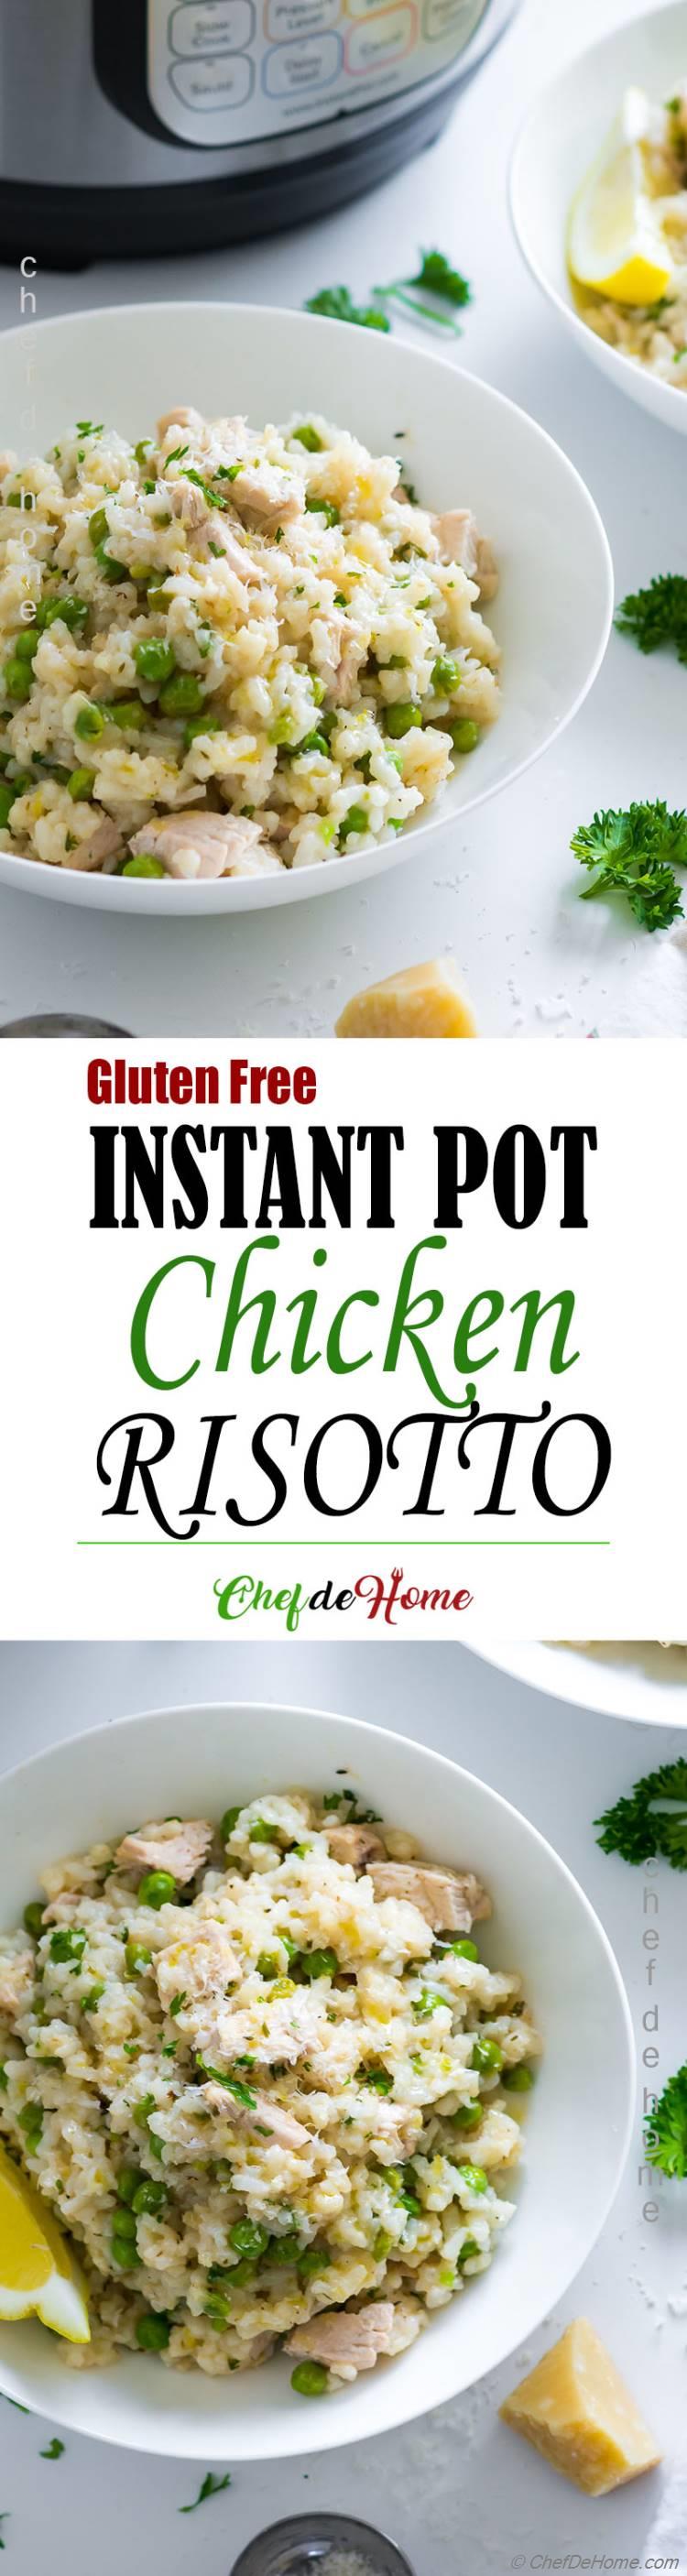 Instant Pot Chicken Risotto Recipe